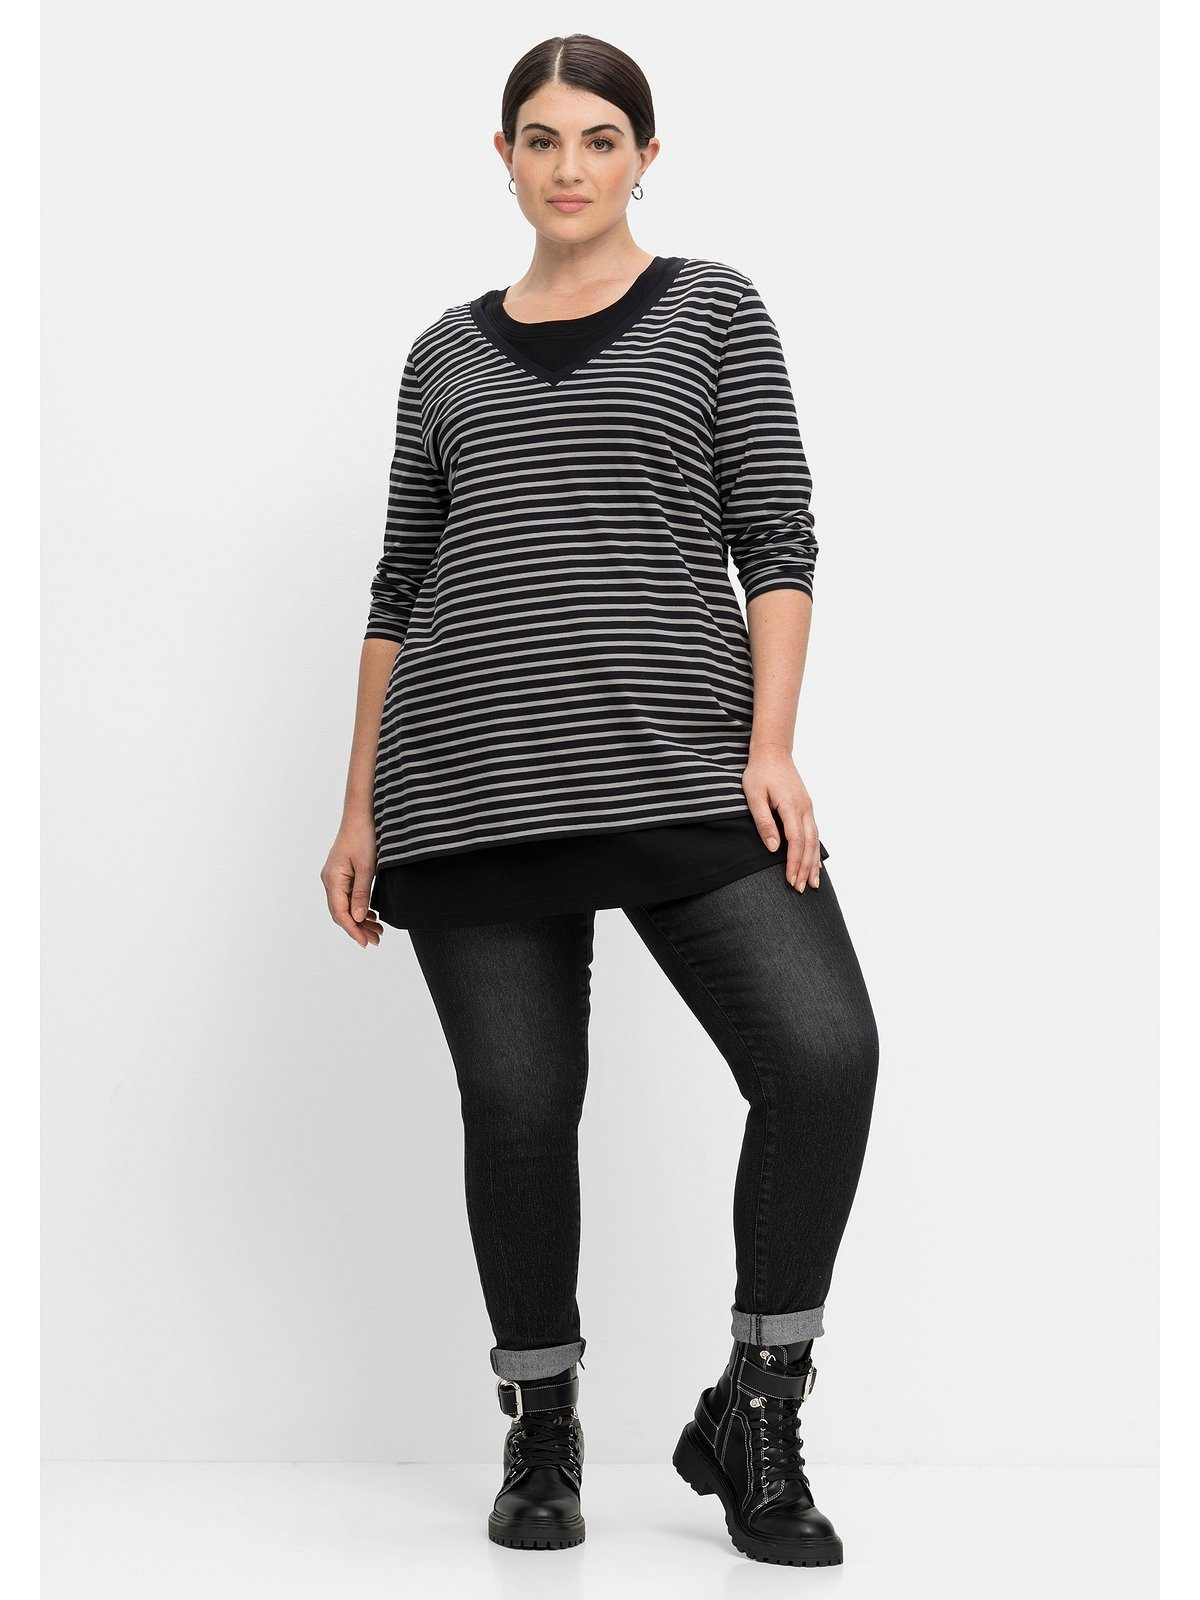 Sheego 2-in-1-Shirt Größen schwarz im als Große gestreift Set, Layering-Look